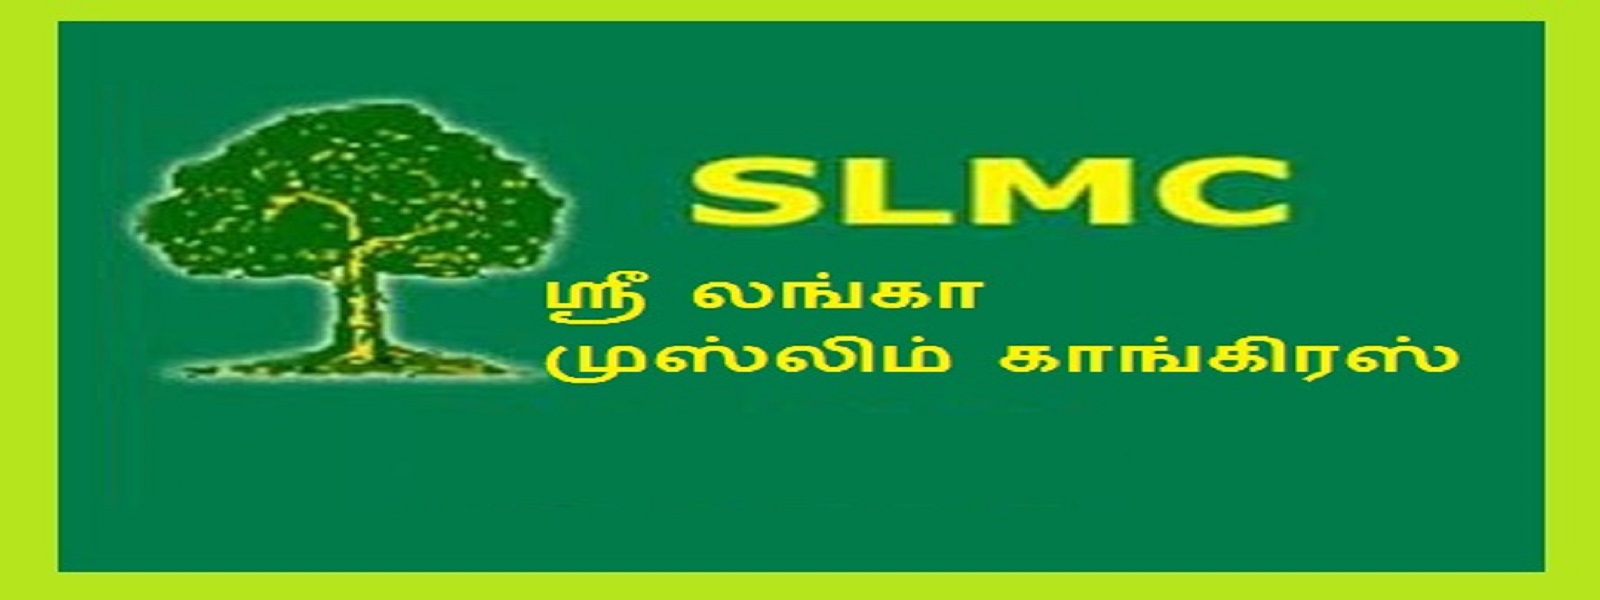 SLMC உறுப்பினர்கள் மூவரின் பதவிகள் இடைநிறுத்தம்